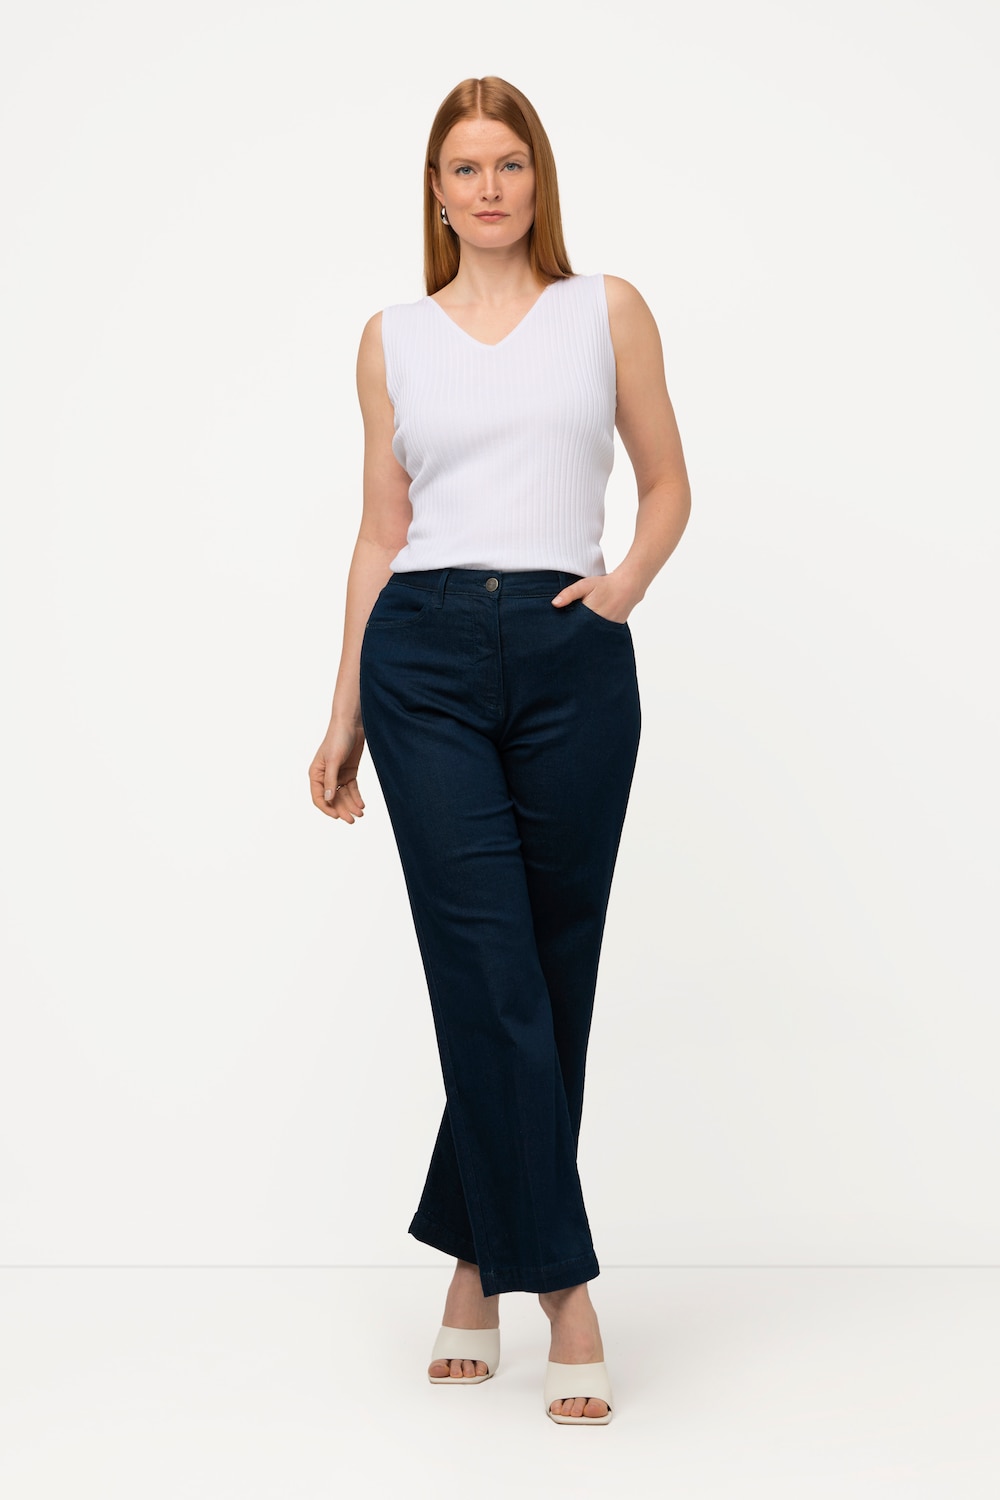 Grote Maten jeans, Dames, blauw, Maat: 60, Katoen/Synthetische vezels, Ulla Popken